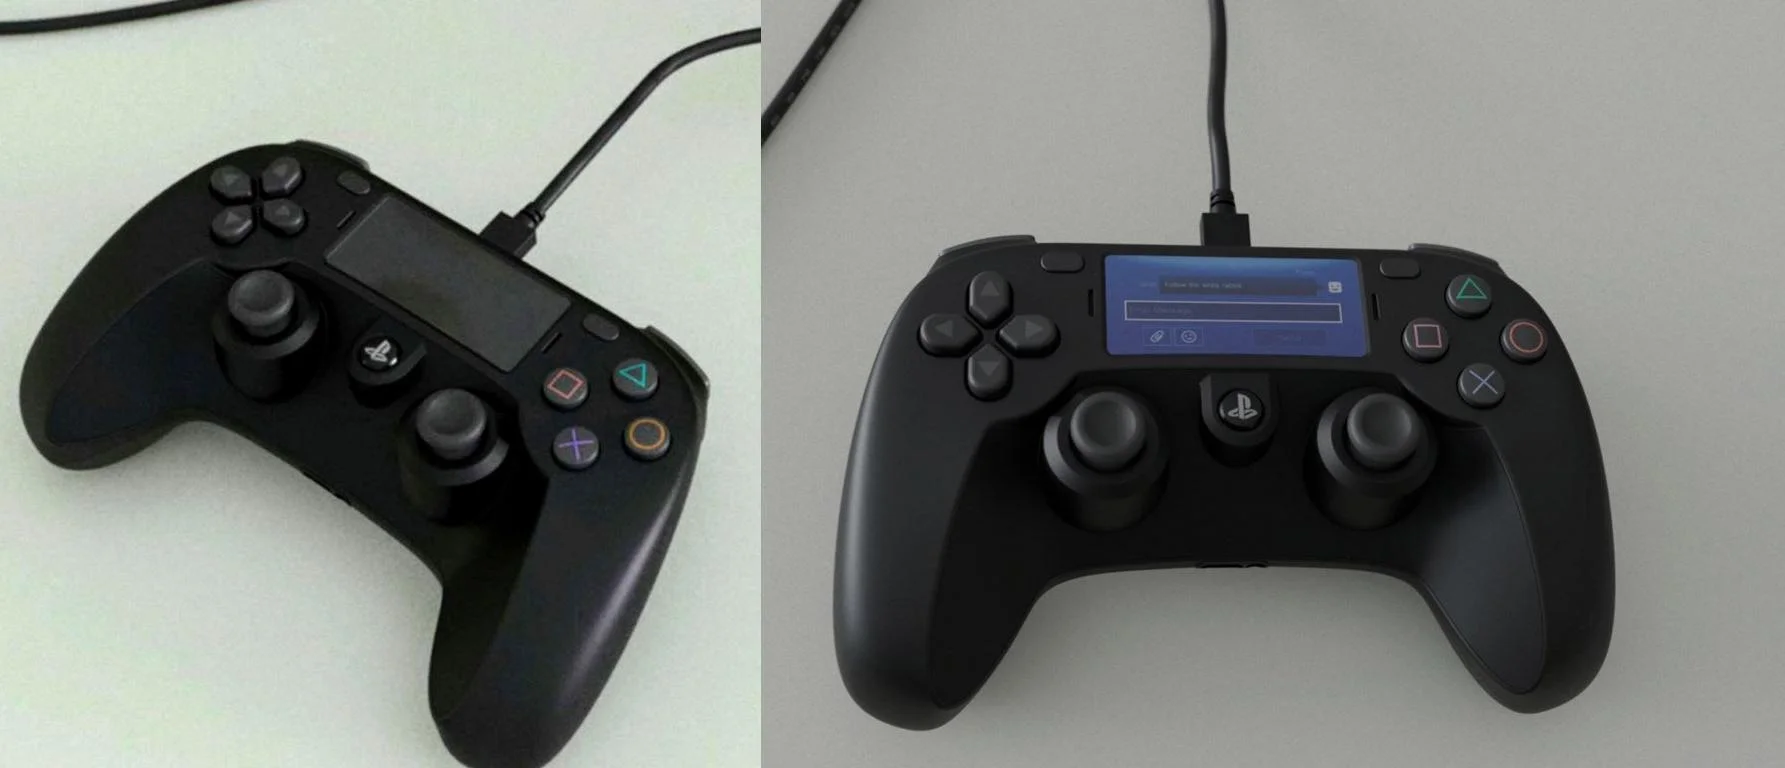 Слух: в сети появились фотографии контроллера PlayStation 5 - фото 2